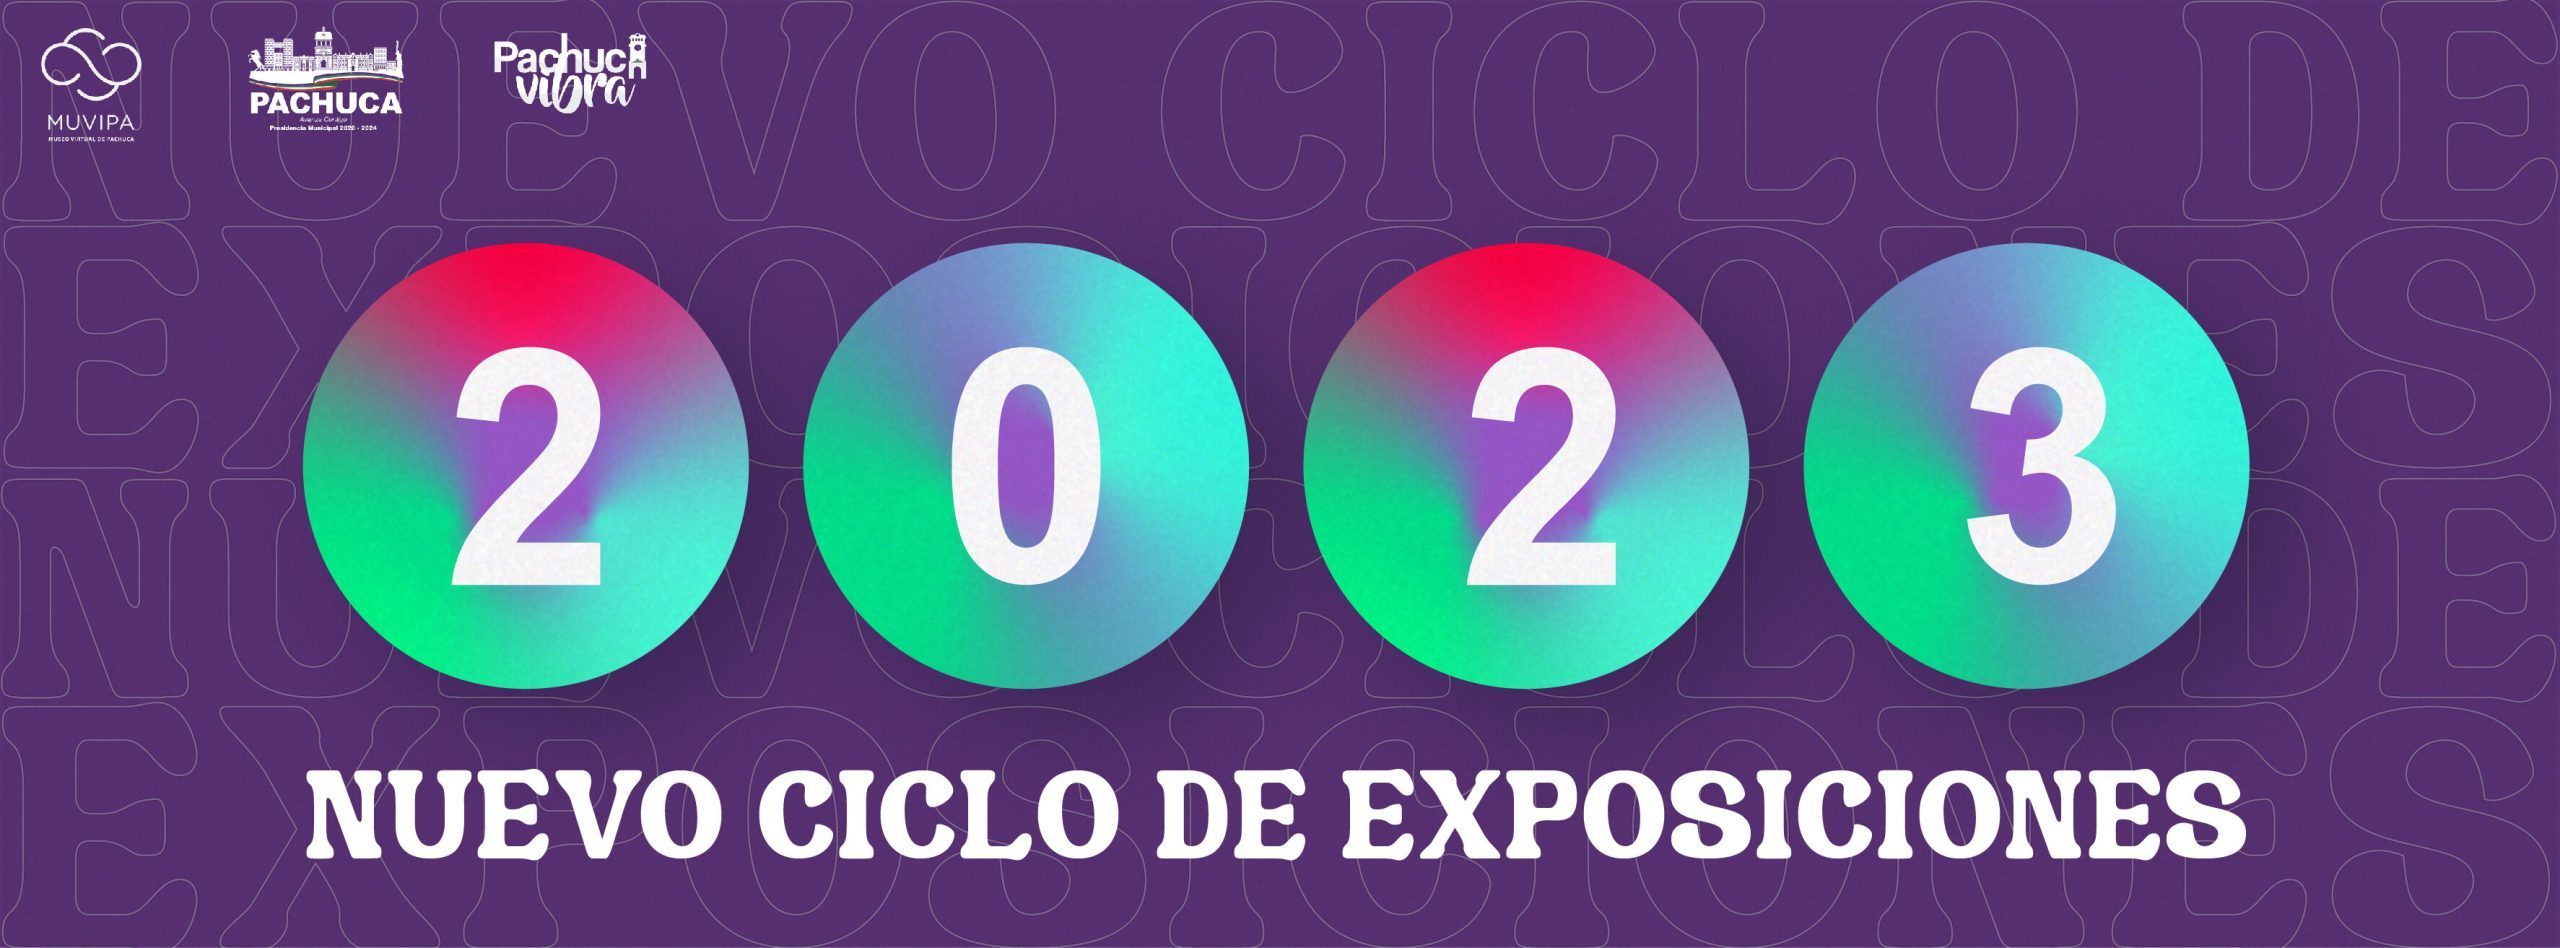 Portada Convocatoria Ciclo de exposiciones, 2023 (1)